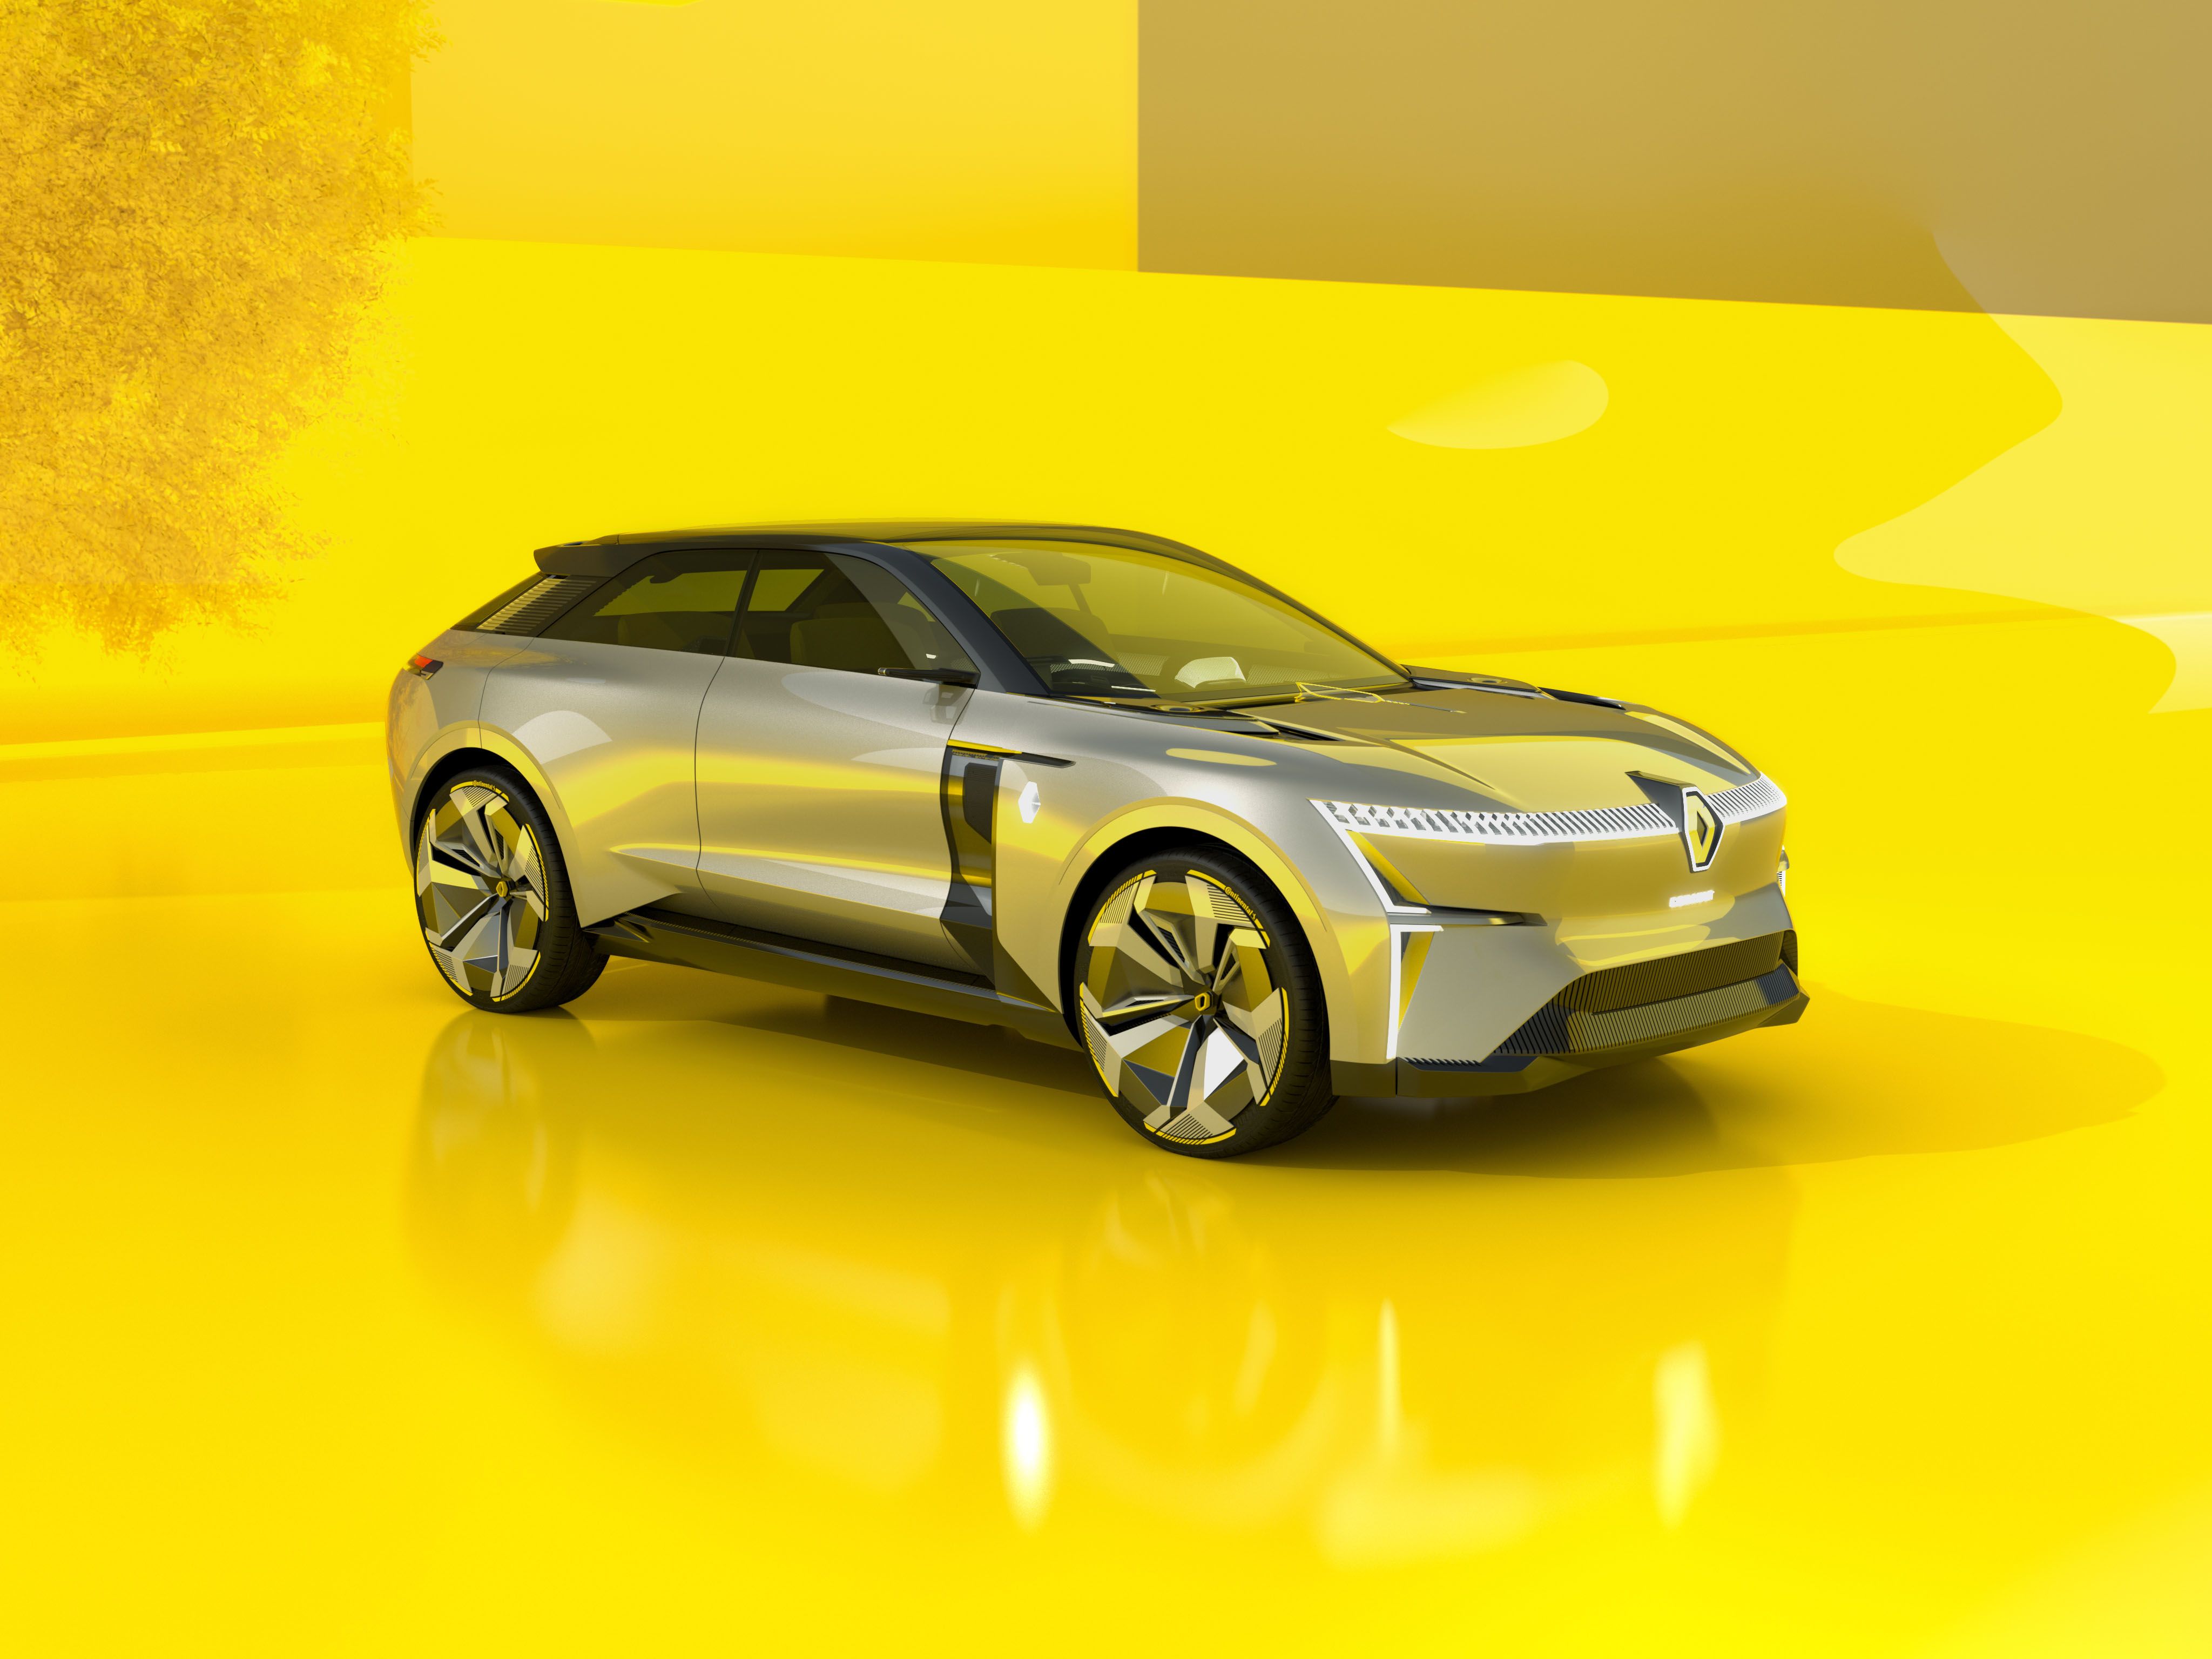 2020 Renault MORPHOZ concept